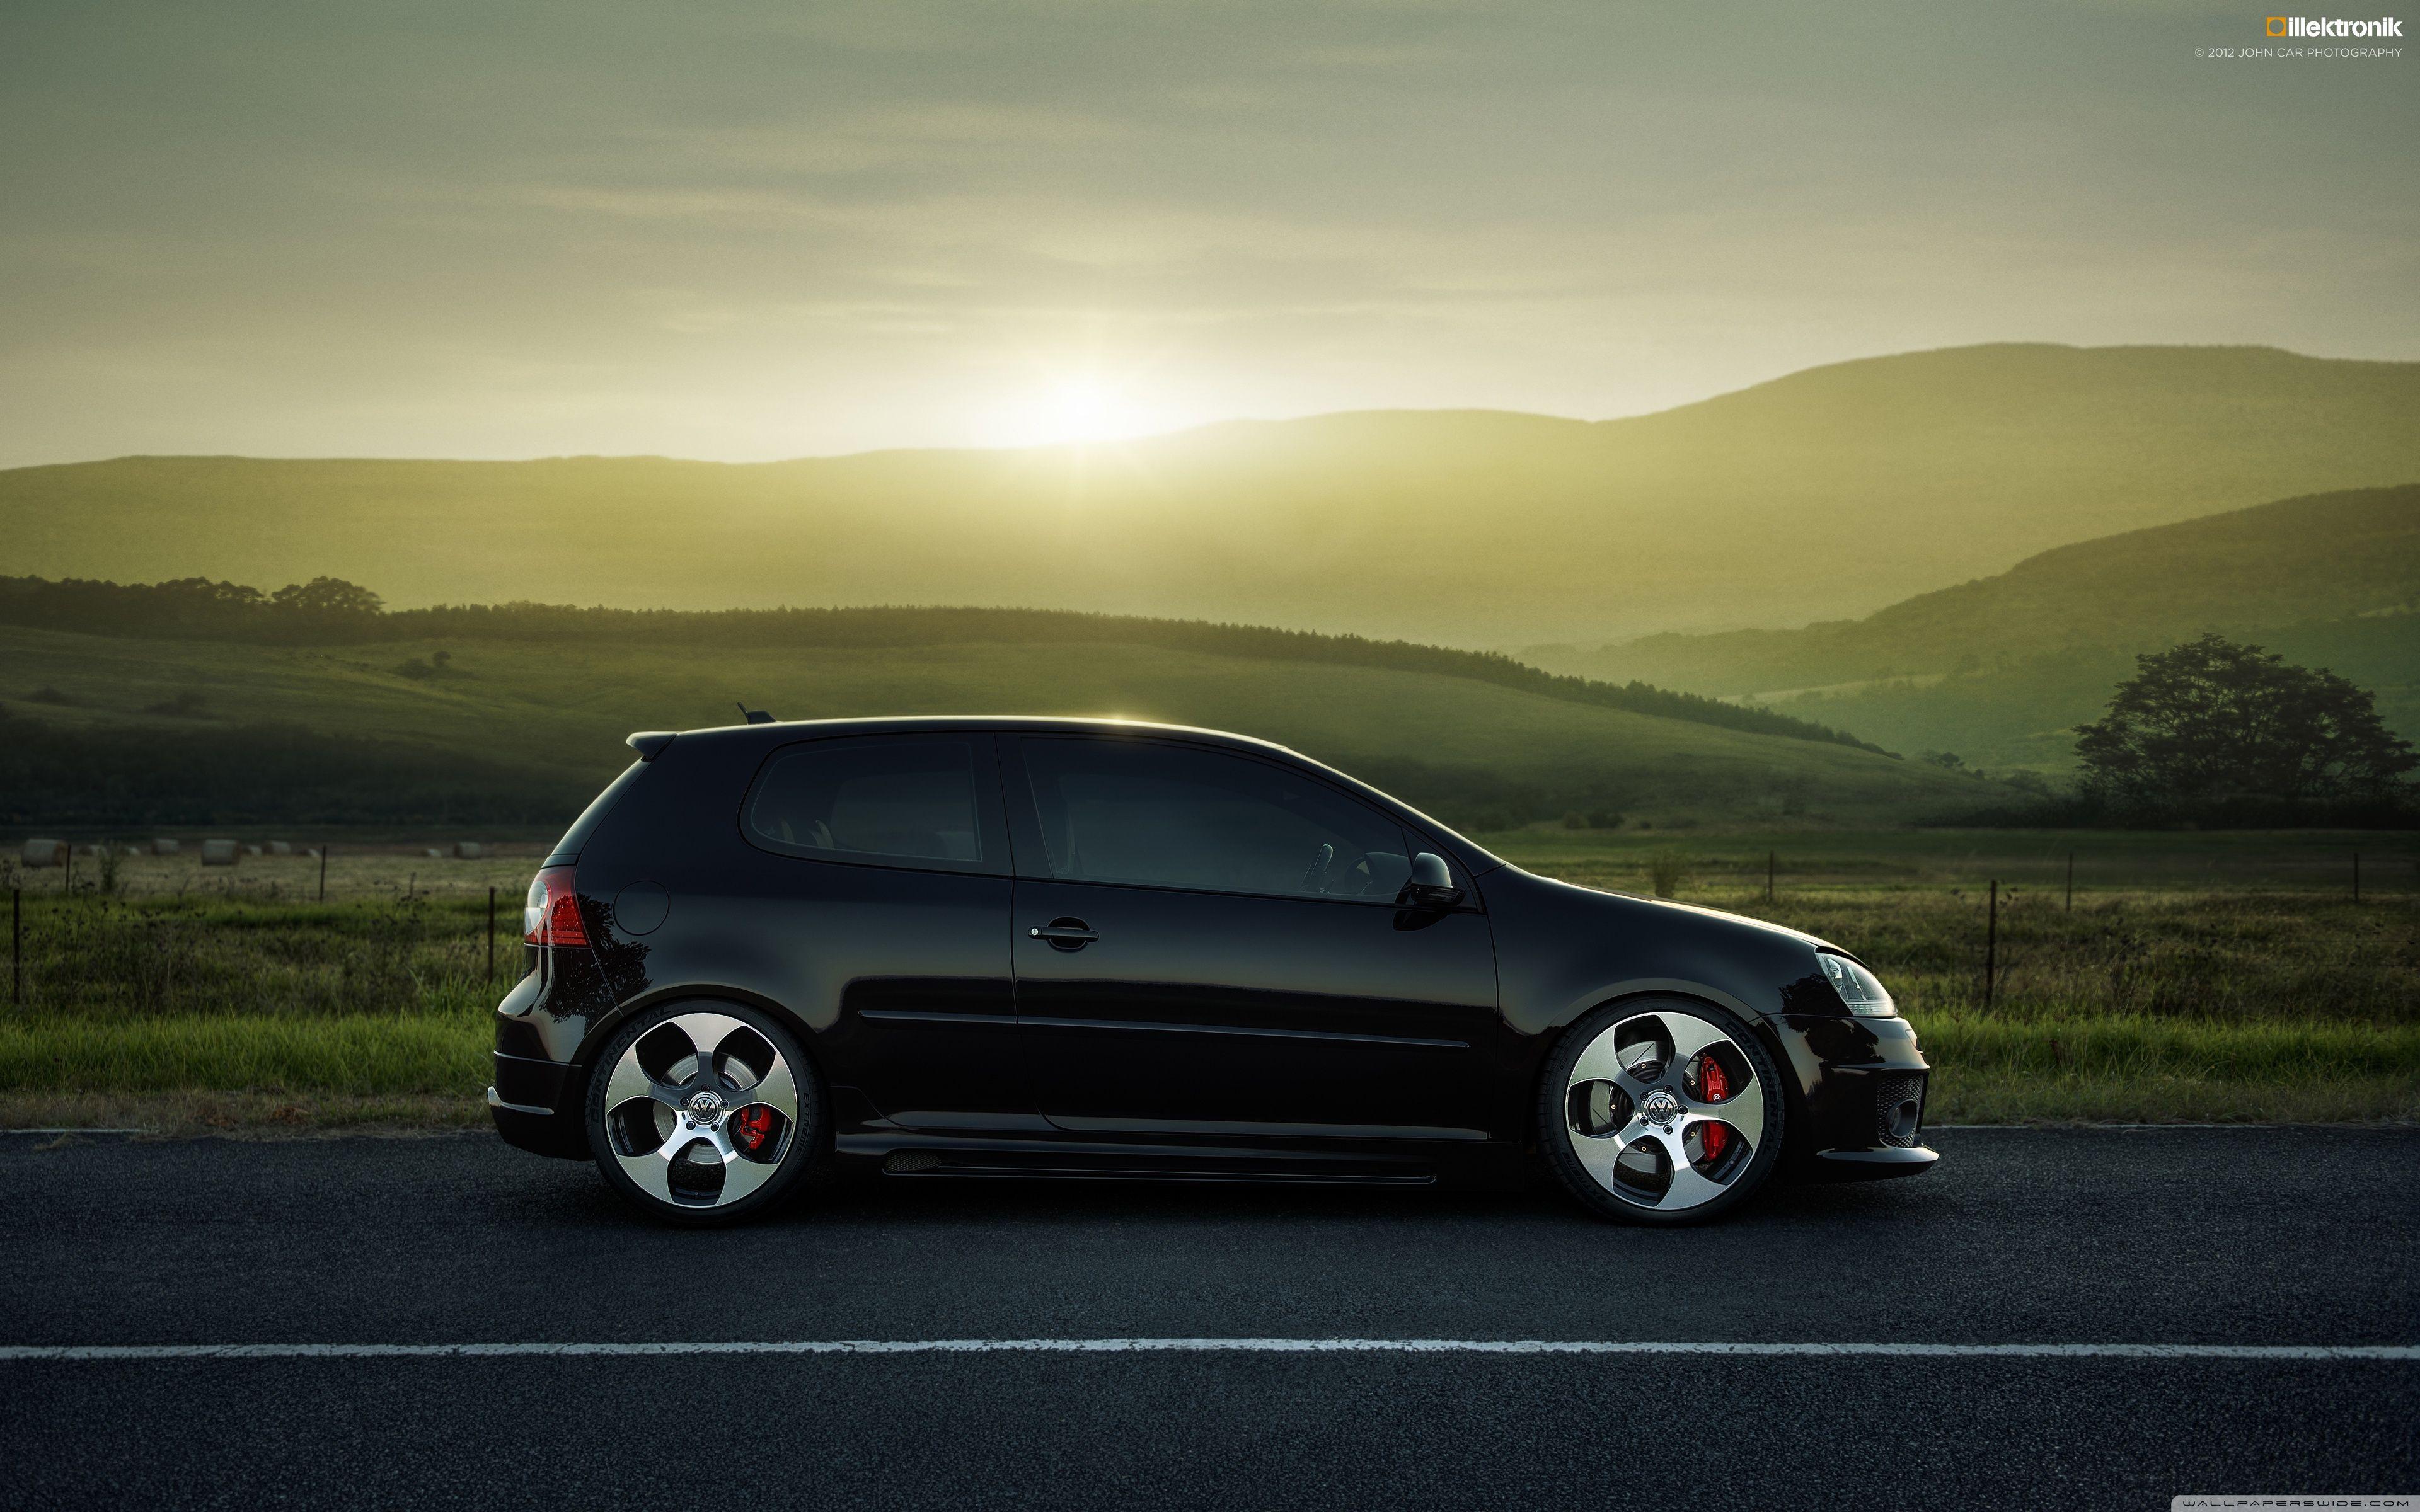 2012 BBM Volkswagen Golf V GTI tuning h wallpaper, 2560x1600, 139352